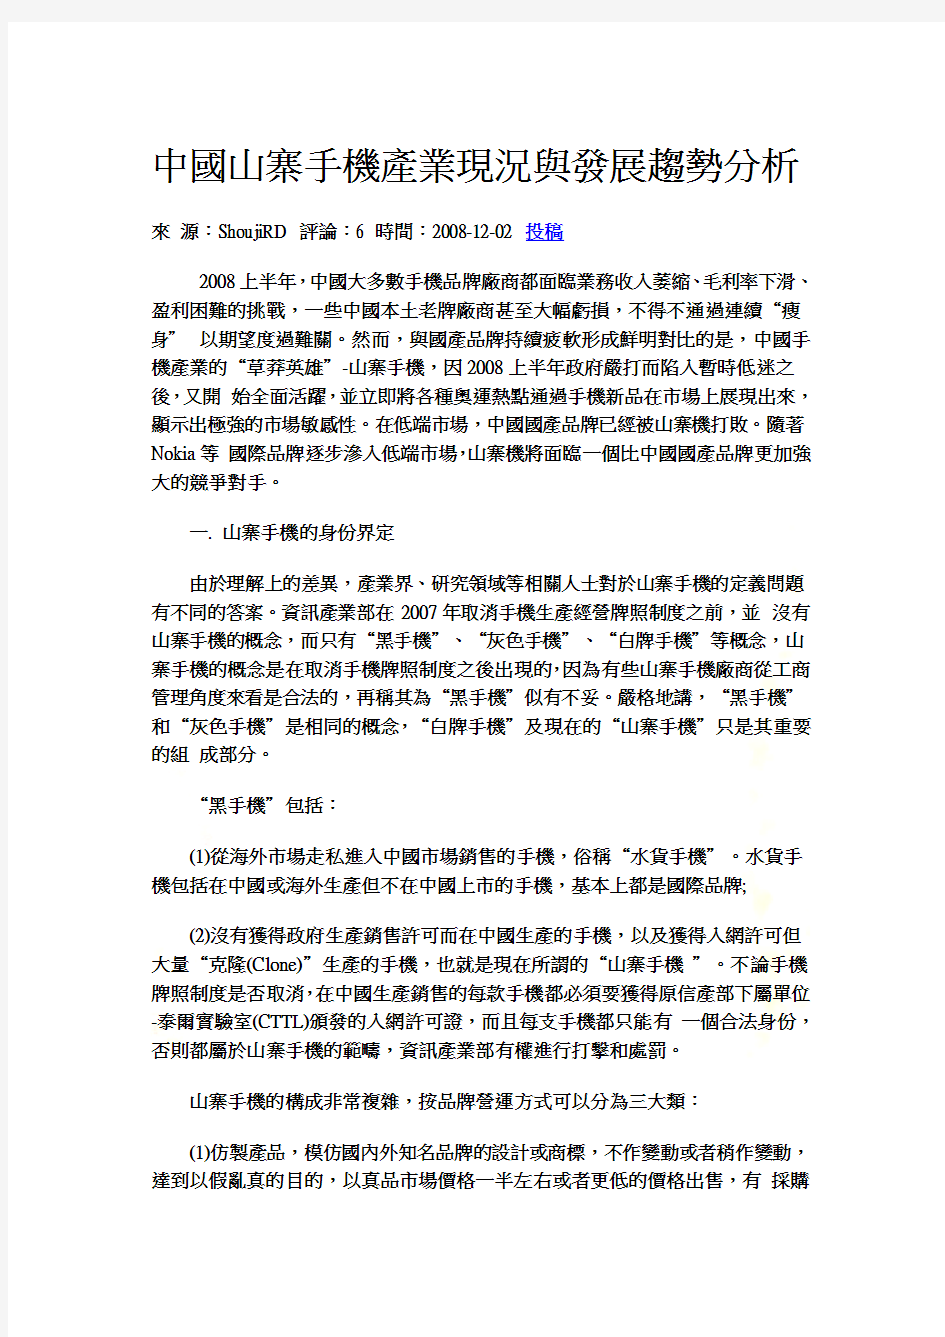 中国山寨手机产业现况与发展趋势分析(doc 12页)